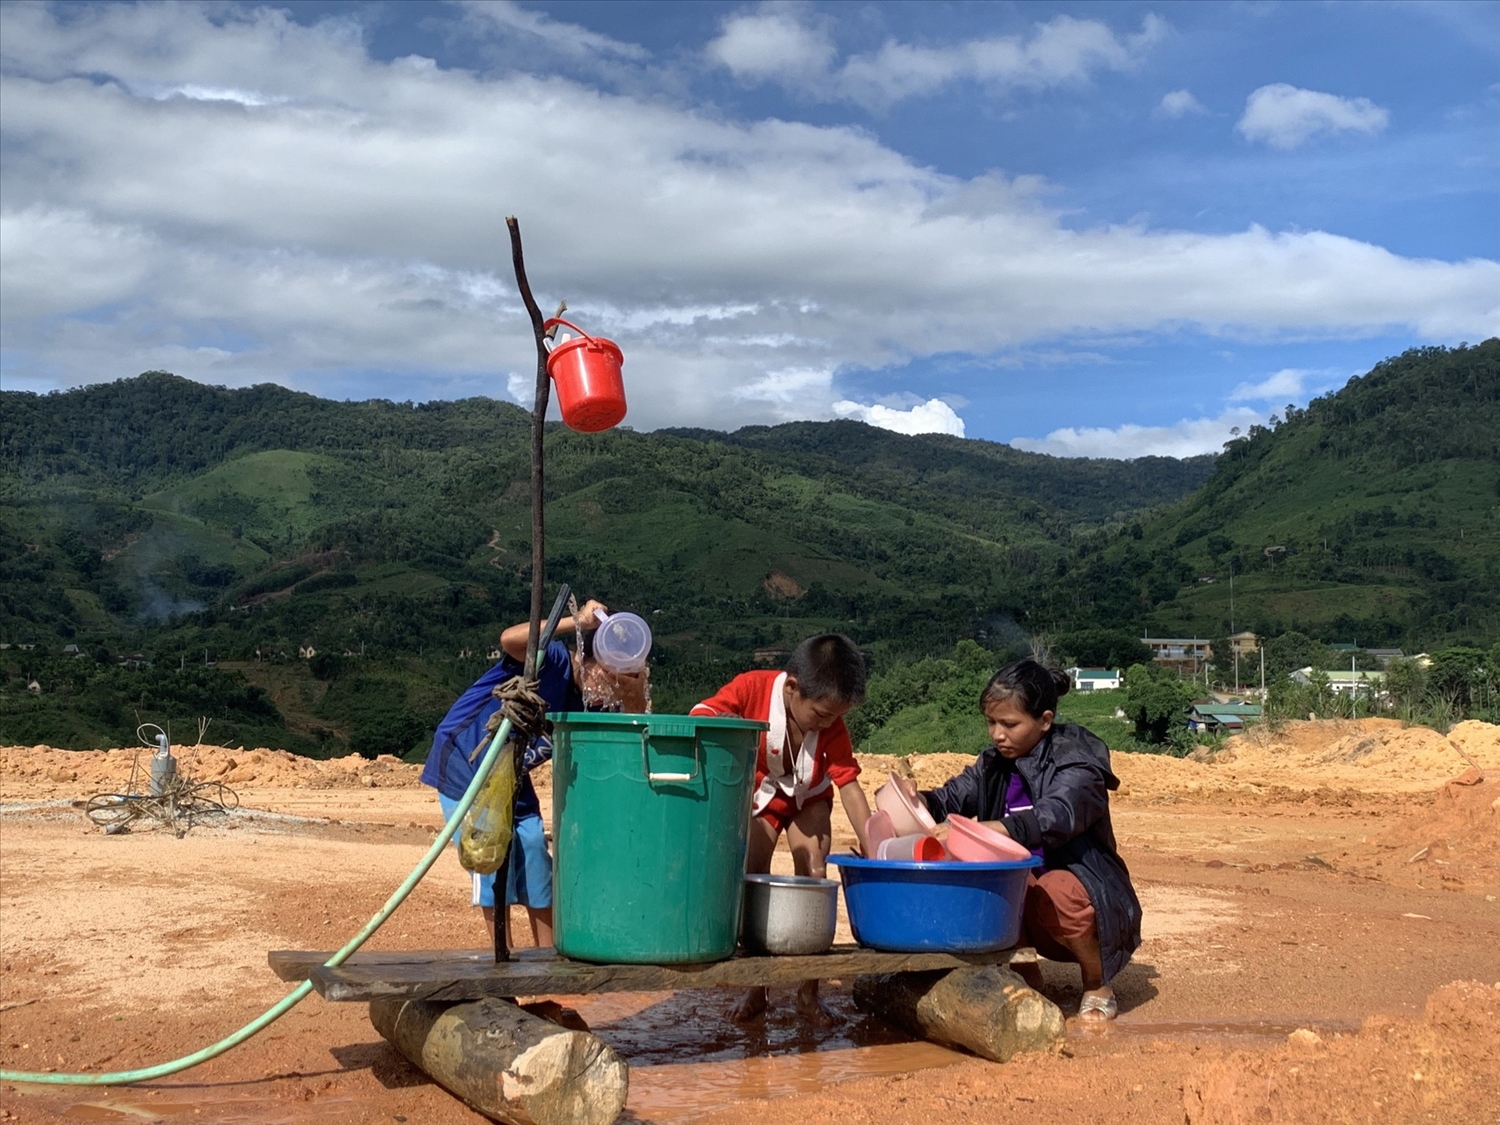 Thực hiện kế hoạch sẽ giúp khu vực nông thôn, miền núi của tỉnh Quảng Ngãi được cung cấp nước ổn định, chất lượng bảo vệ sức khỏe cho người dân (ảnh minh họa)